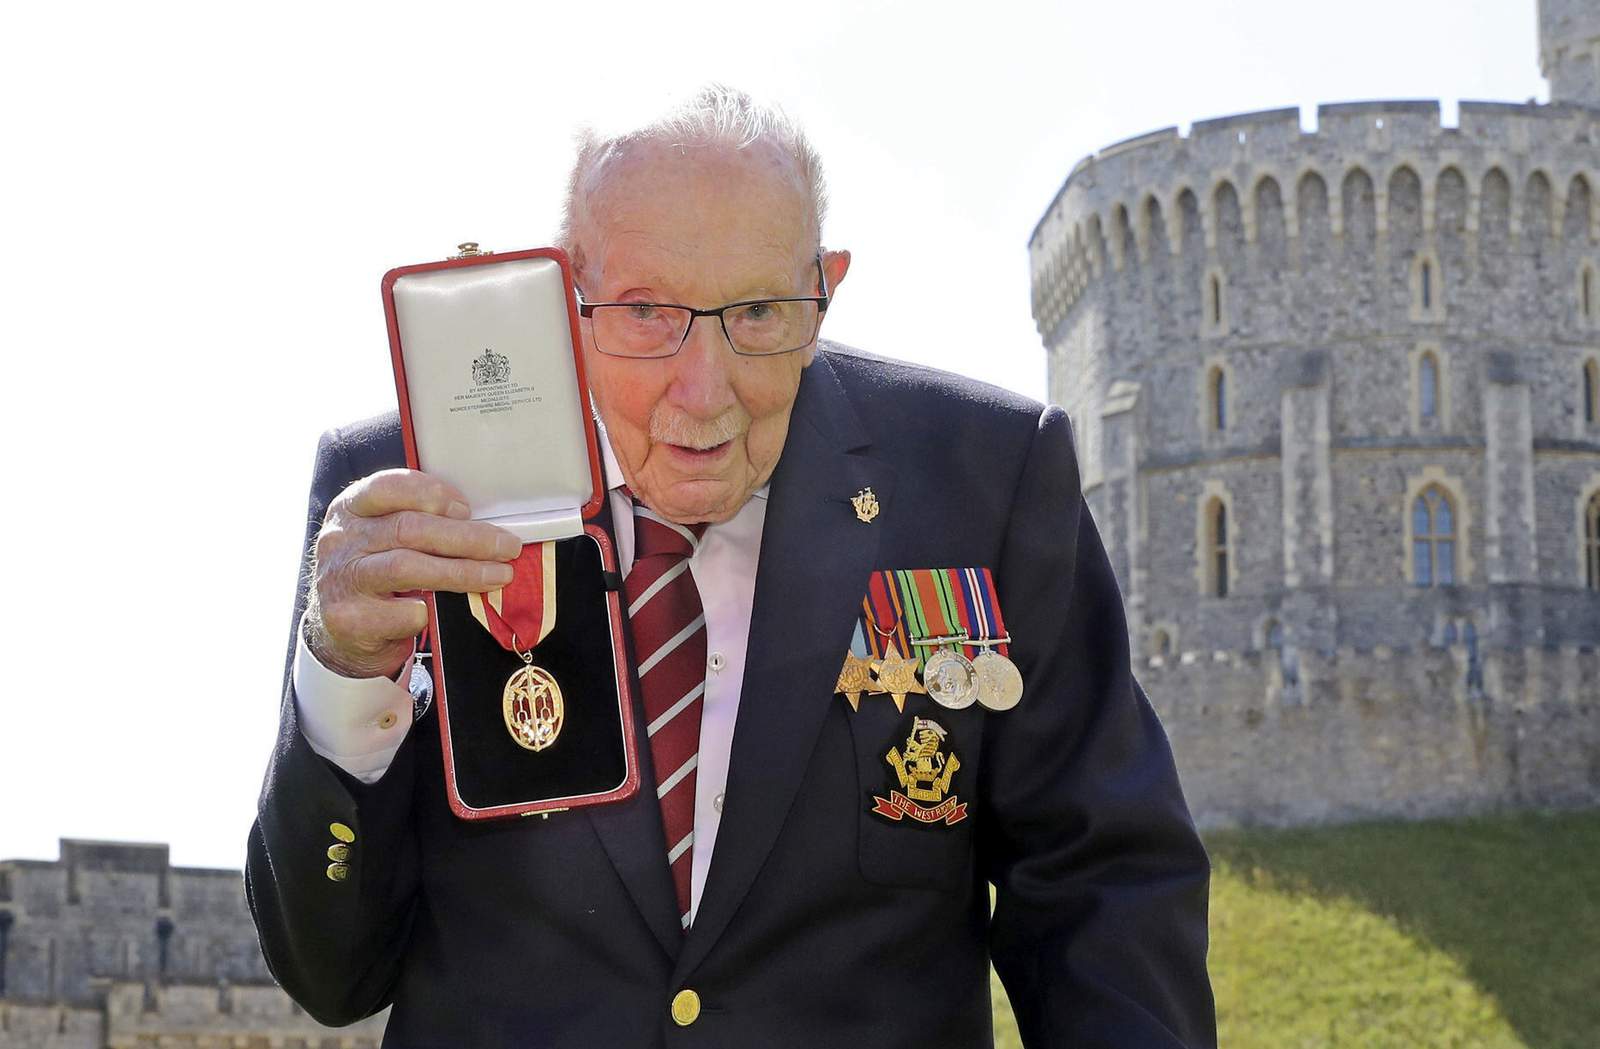 Capt. Tom Moore, WWII vet whose walk cheered UK, dies at 100